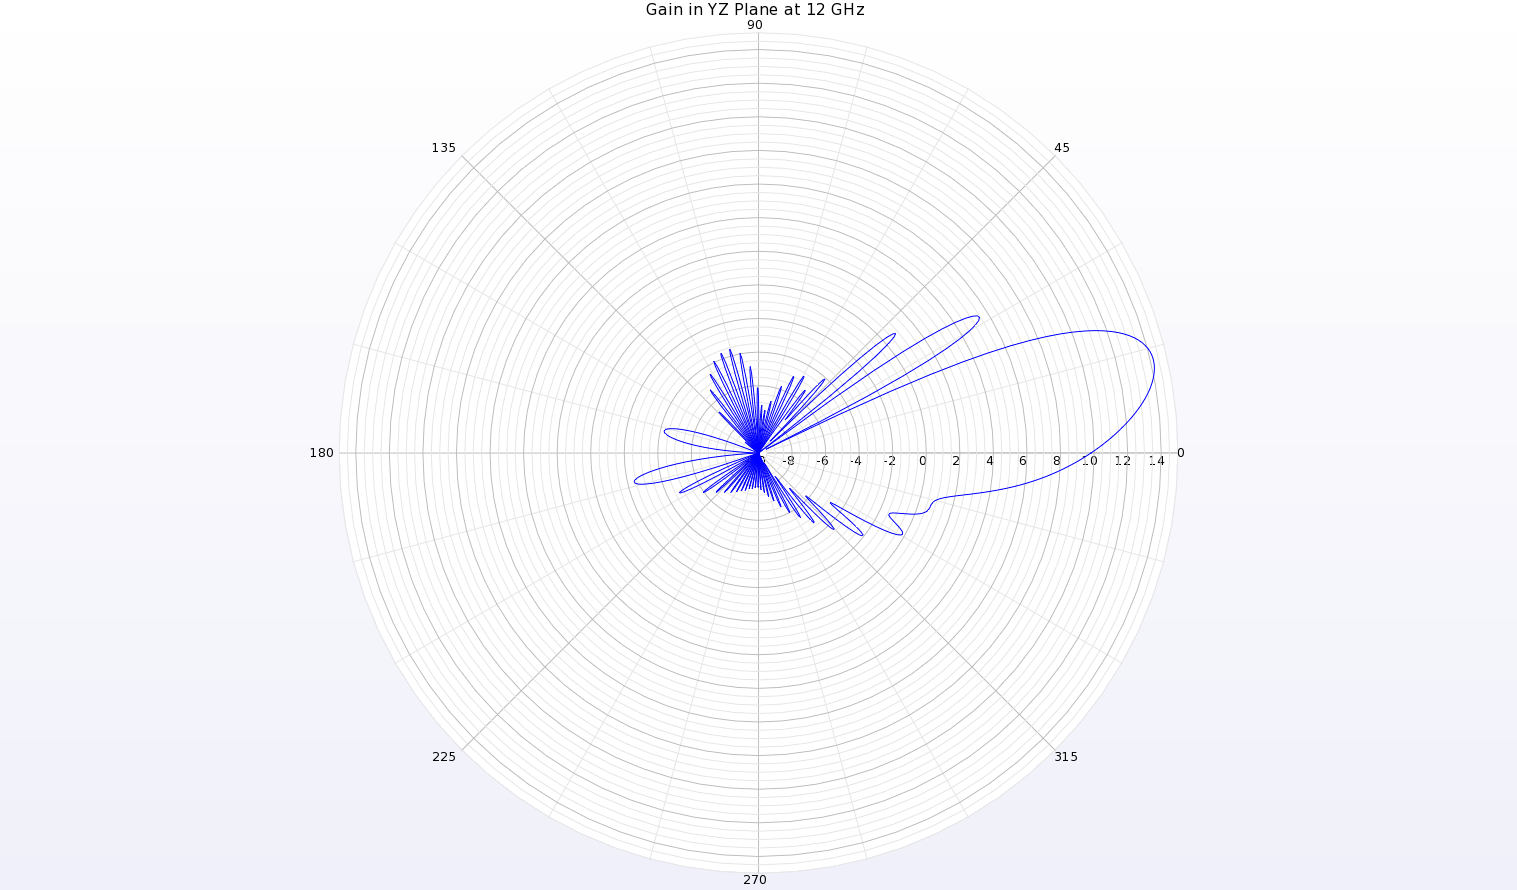 Abbildung 19: Eine Polardiagramm des Gewinndiagramms bei 12 GHz in der YZ-Ebene der Antenne zeigt einen Strahl bei theta=13 Grad mit einem Spitzengewinn von 14,2 dBi.